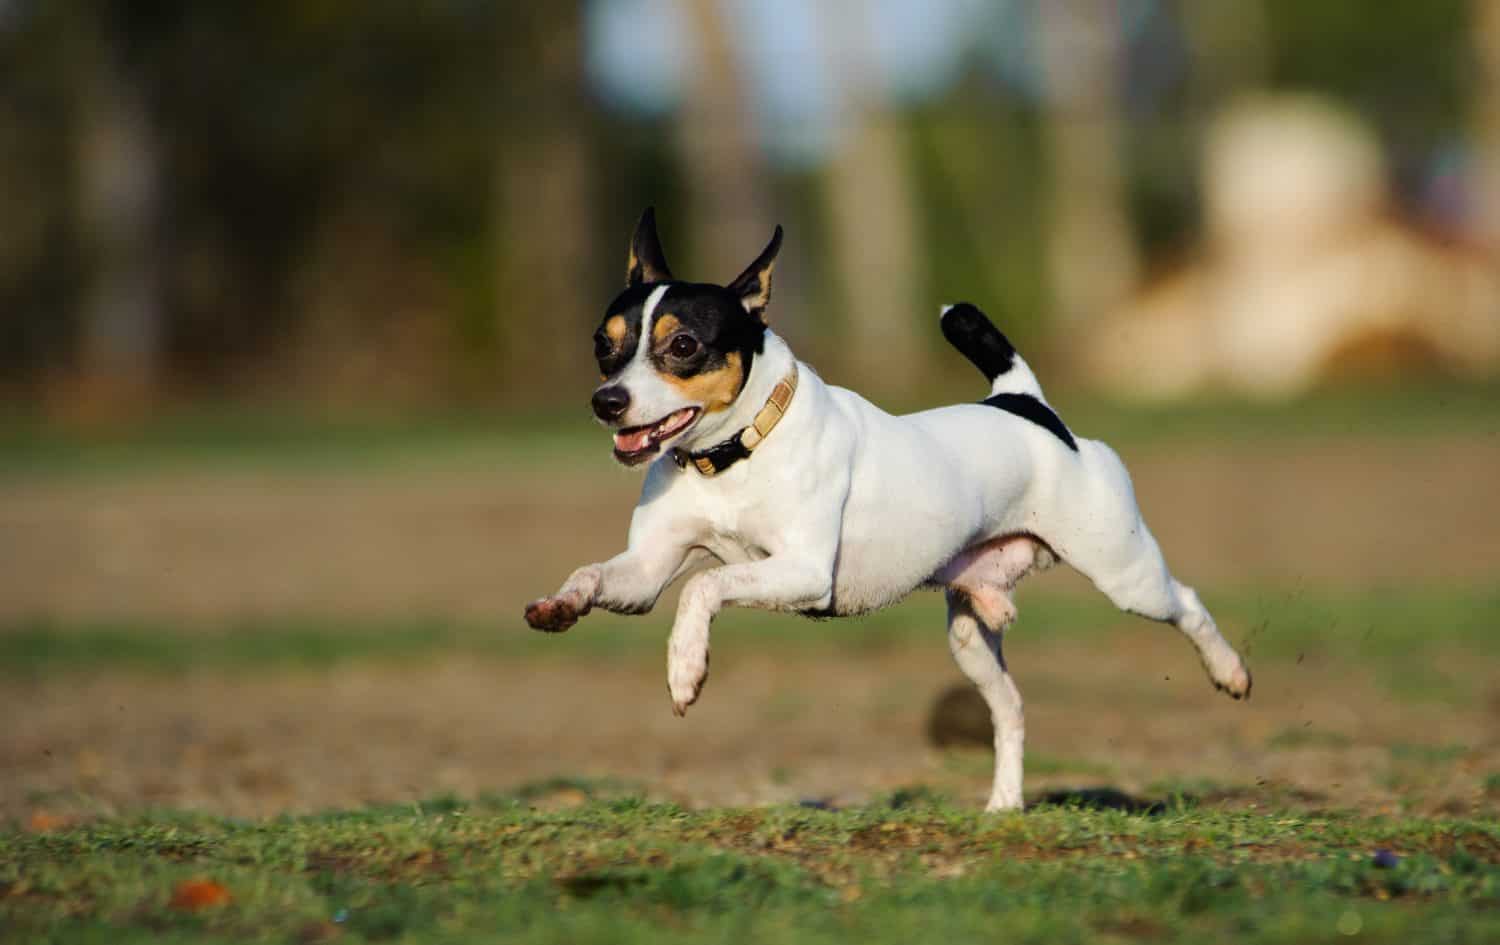 Toy Fox Terrier running through a grass field